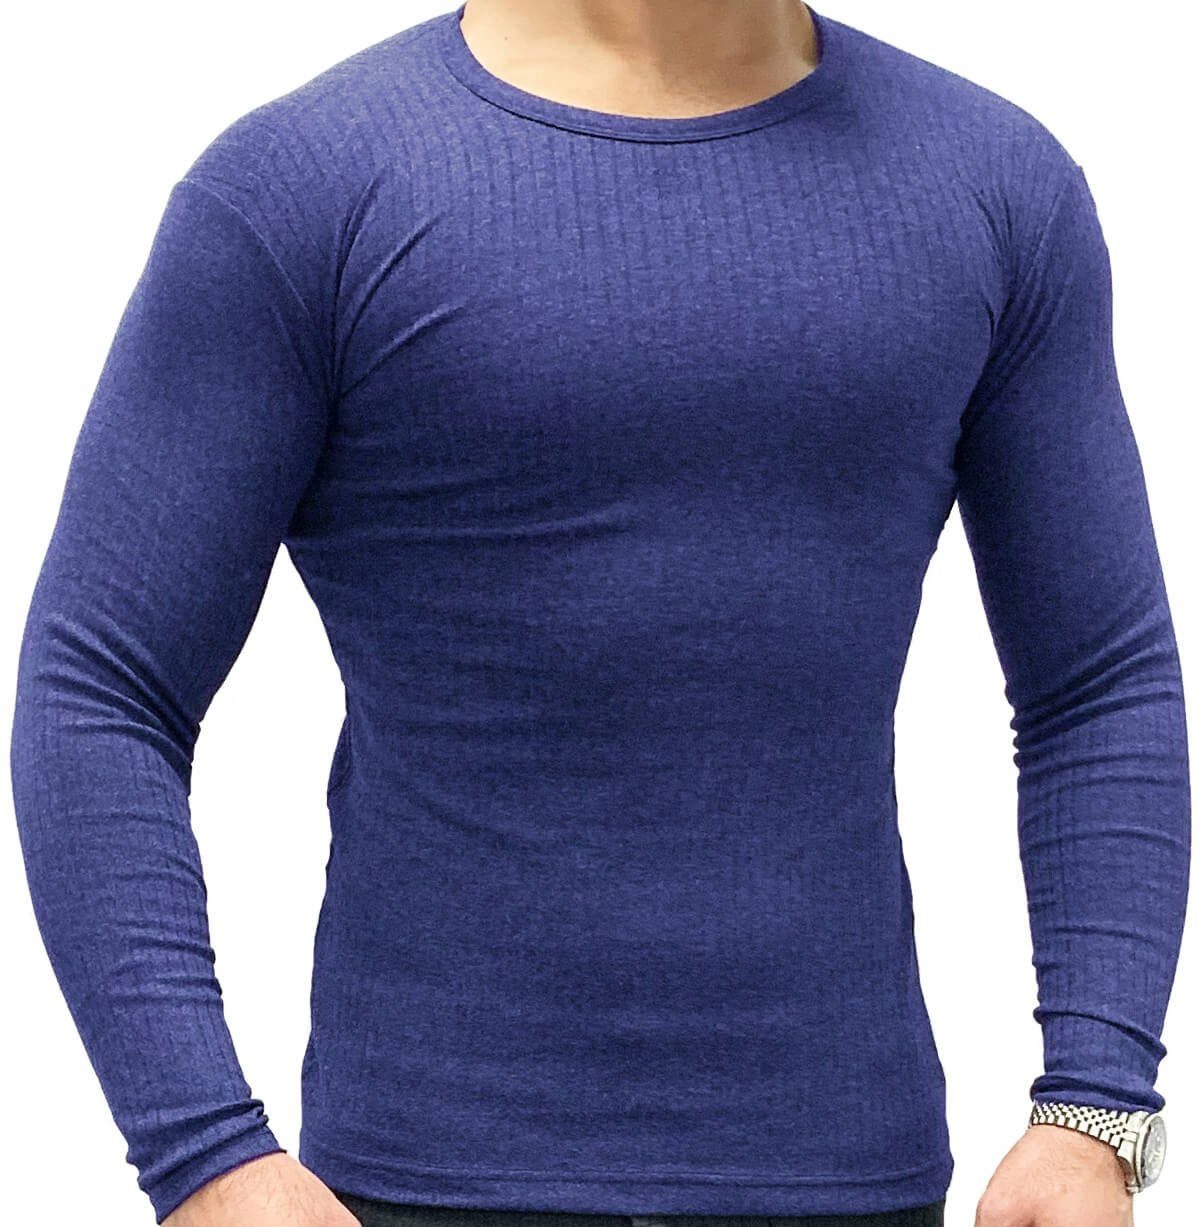 Garcia Pescara für langärmliges Thermounterhemd Herren Thermo-Shirt blau weich, warmes elastisch